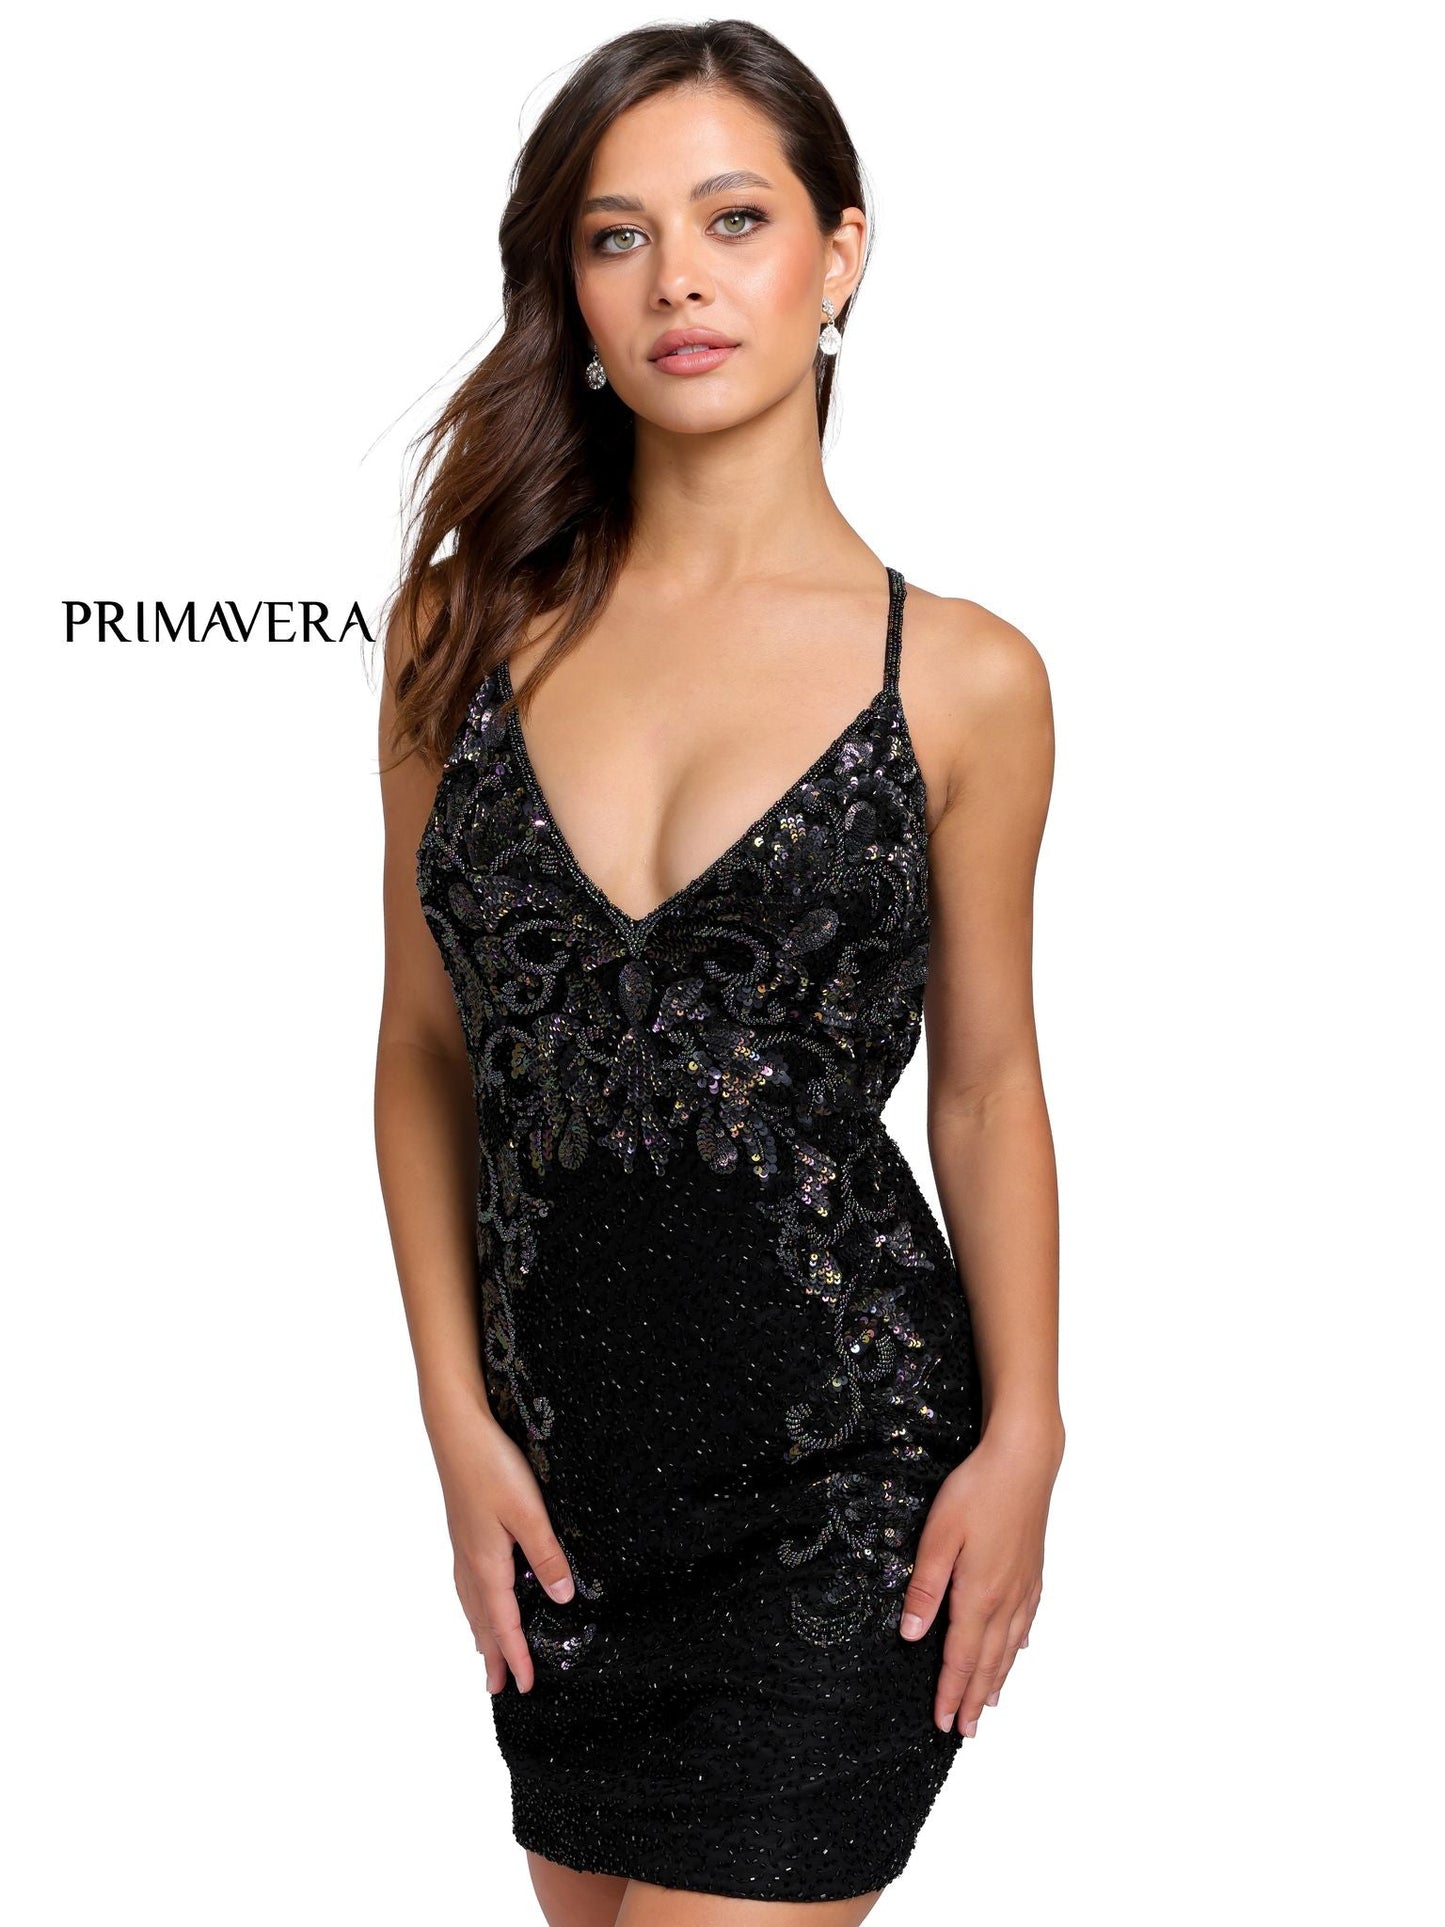 Primavera-Couture-3516-Black-Cocktail-Dress-v-neckline-sequins-backless-straps